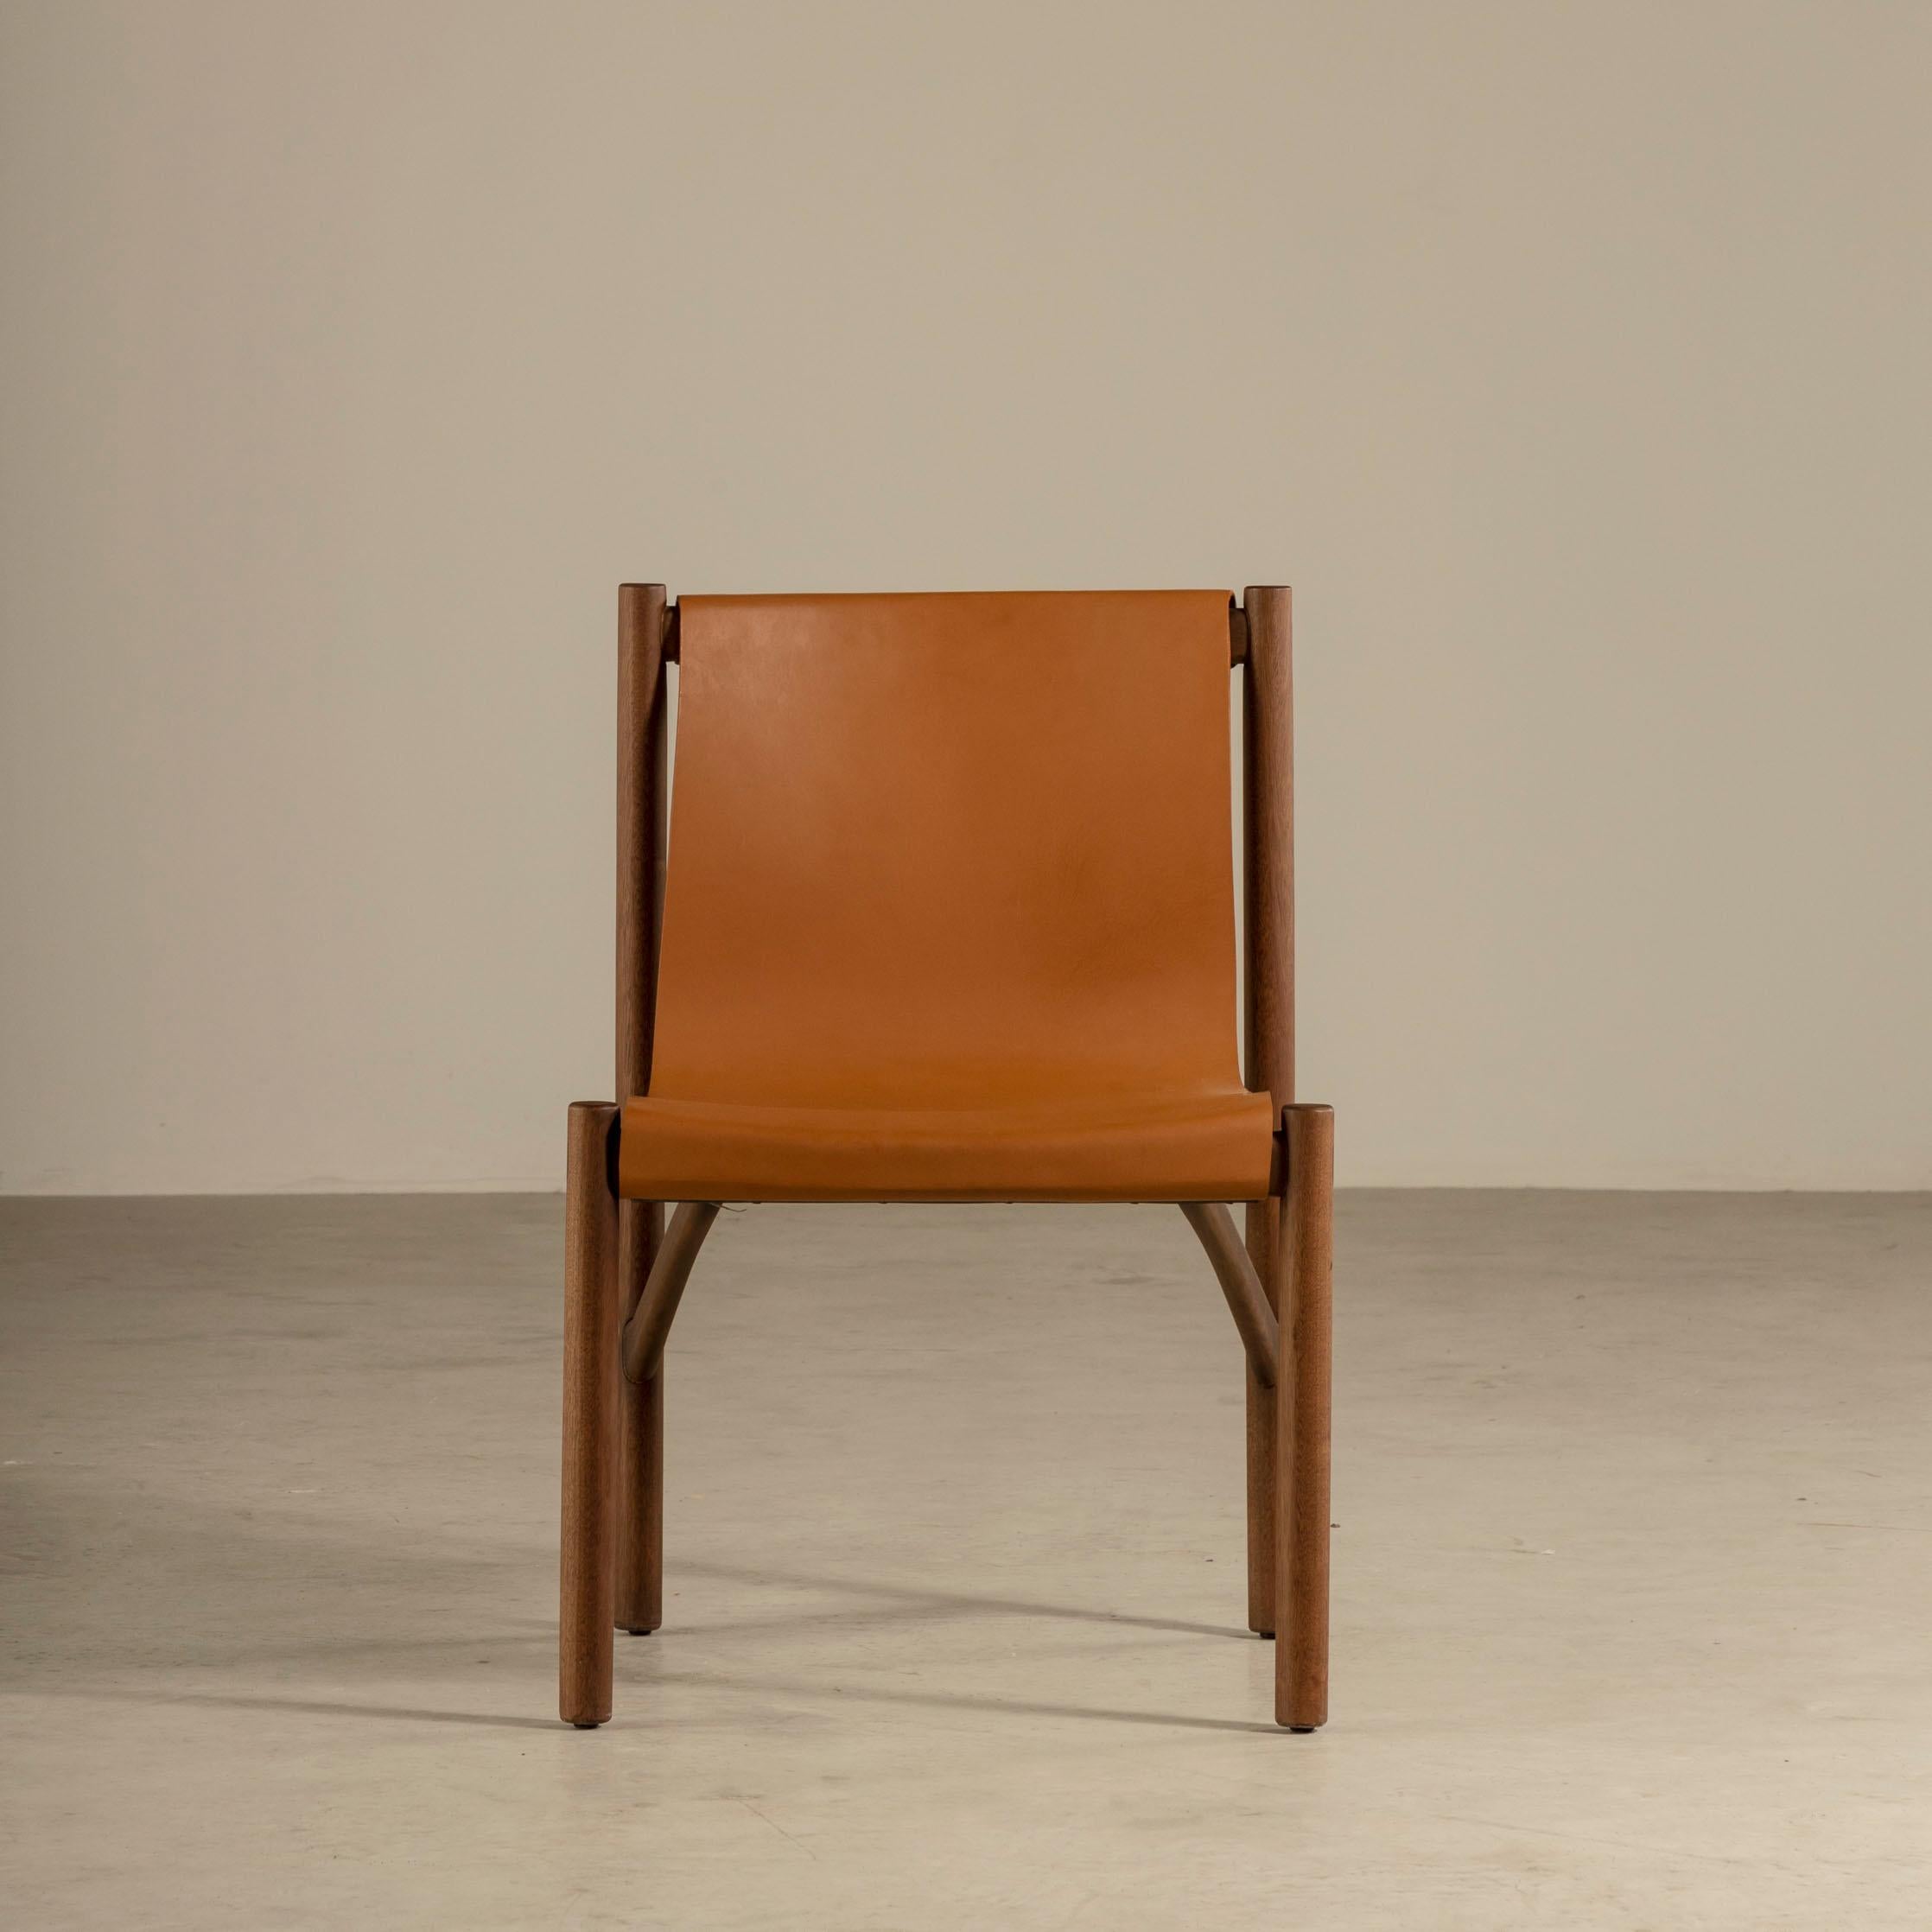 La chaise Frevo est un meuble étonnant créé par l'artiste et designer brésilien Ronald Sasson en 2021. Il reflète la vision unique et le regard aiguisé de son créateur, mettant en valeur un mélange parfait de simplicité et de lignes sculpturales qui